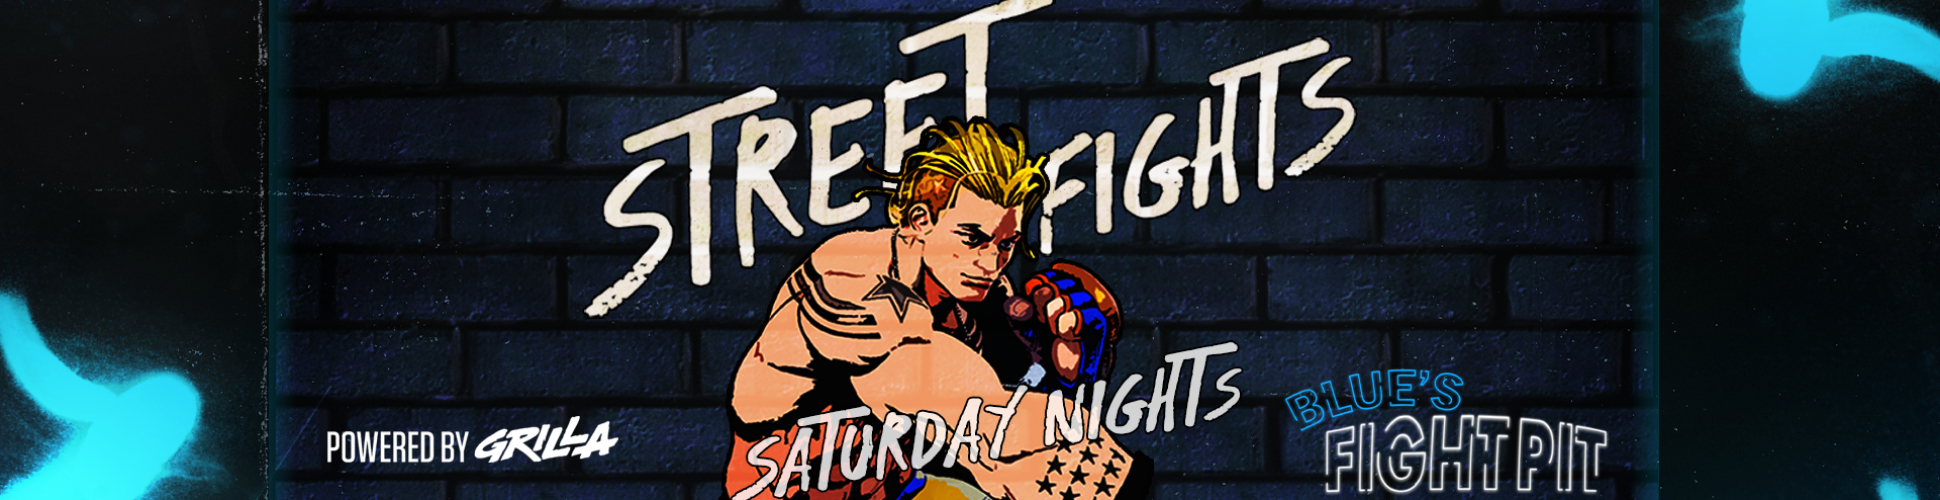 Blue's Fight Pit - Street Fights R4 Saturday Nights #24